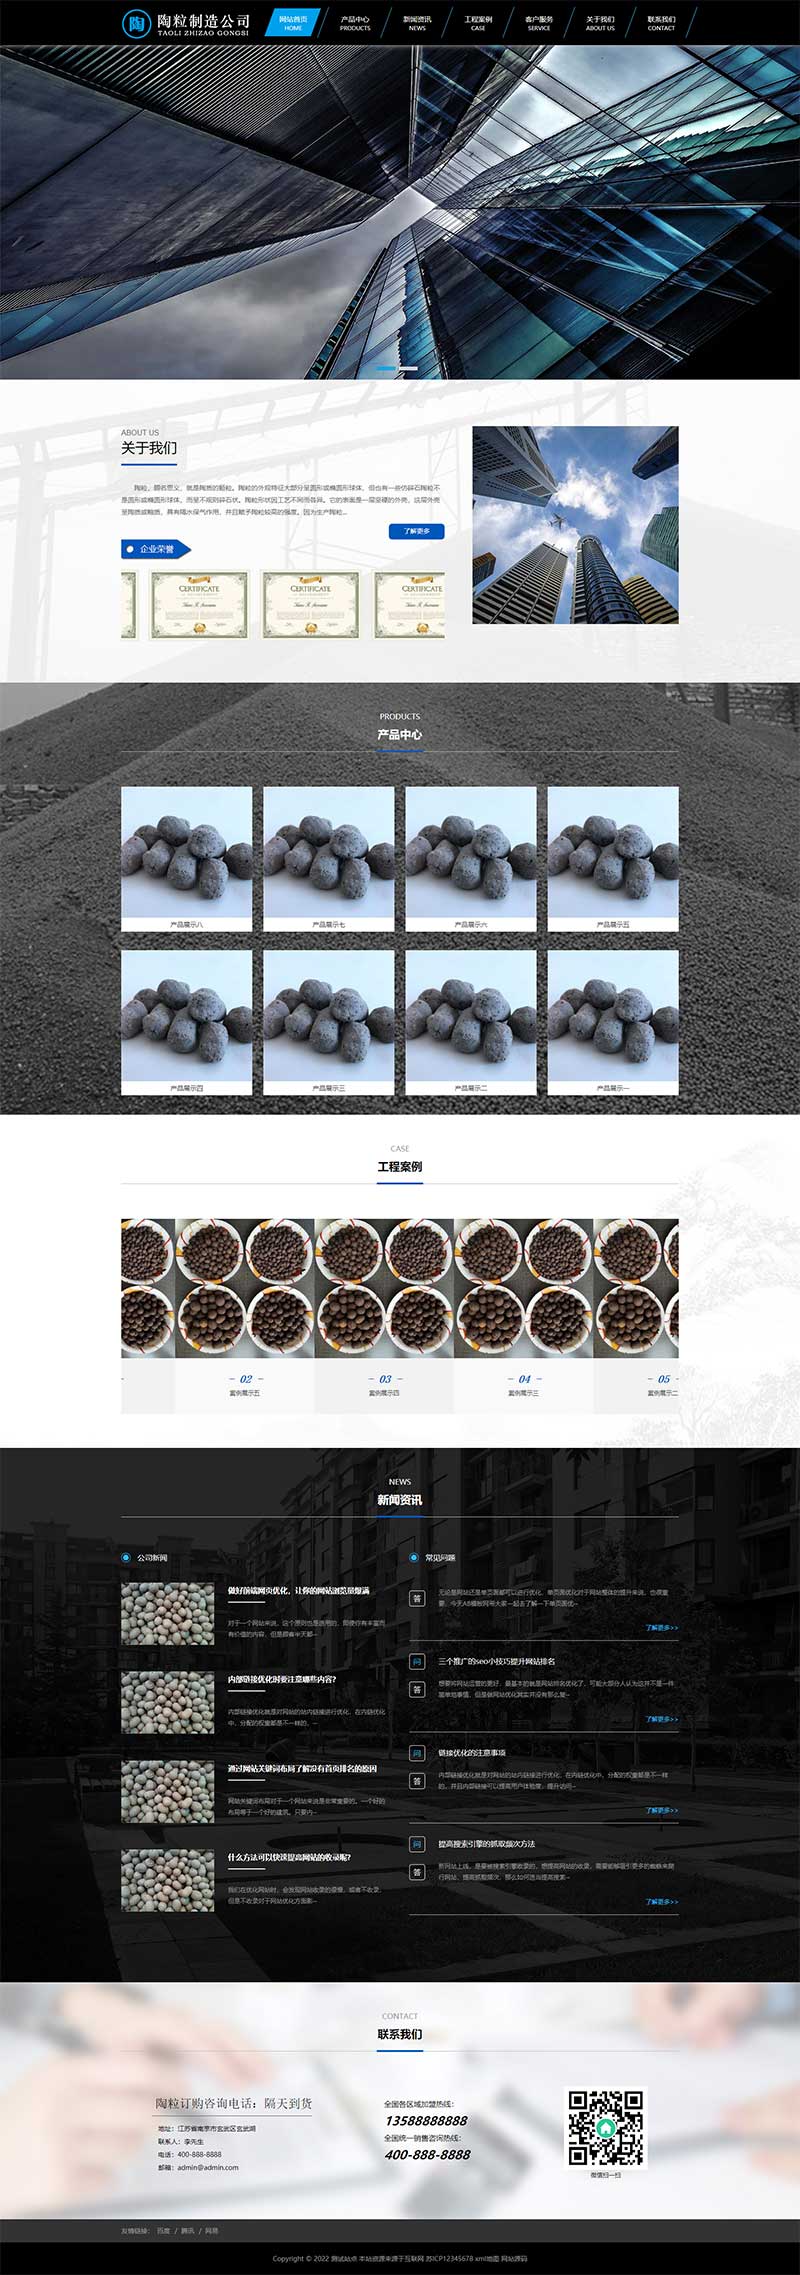 (PC+手机版)黑色陶粒生产工业制造企业网站源码电脑端展示图片